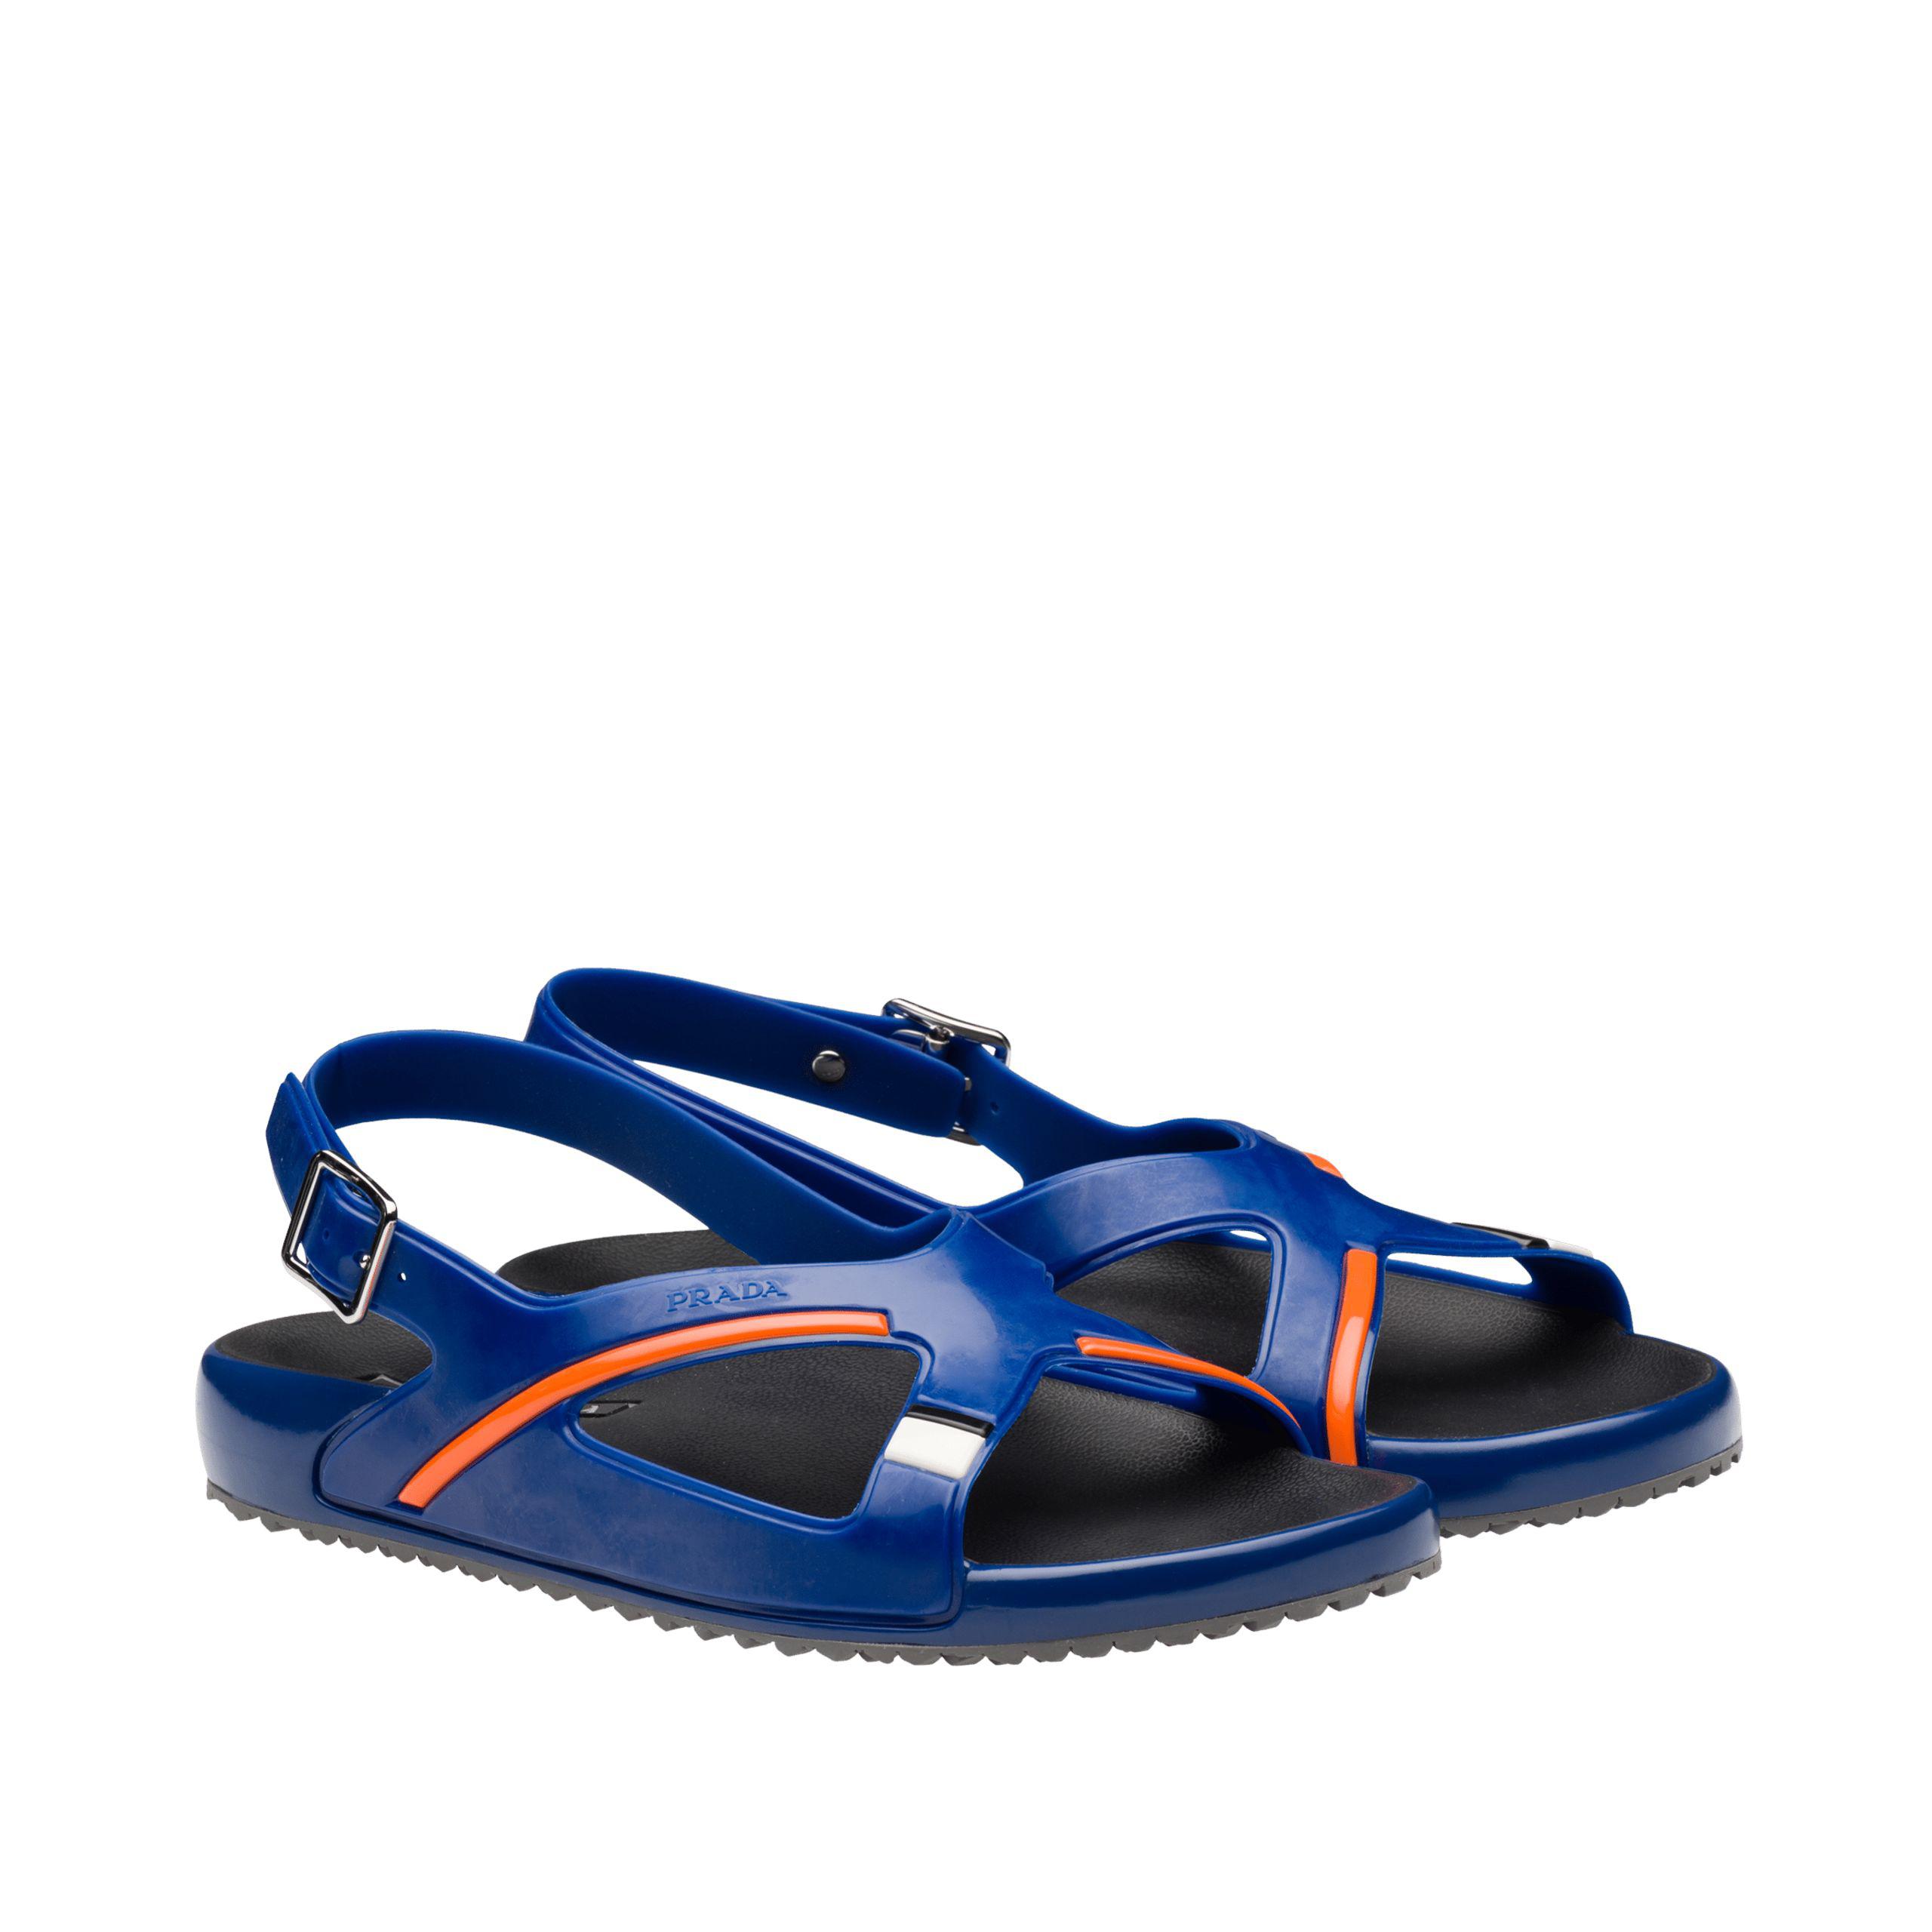 Prada Rubber Sandals in Blue - Lyst